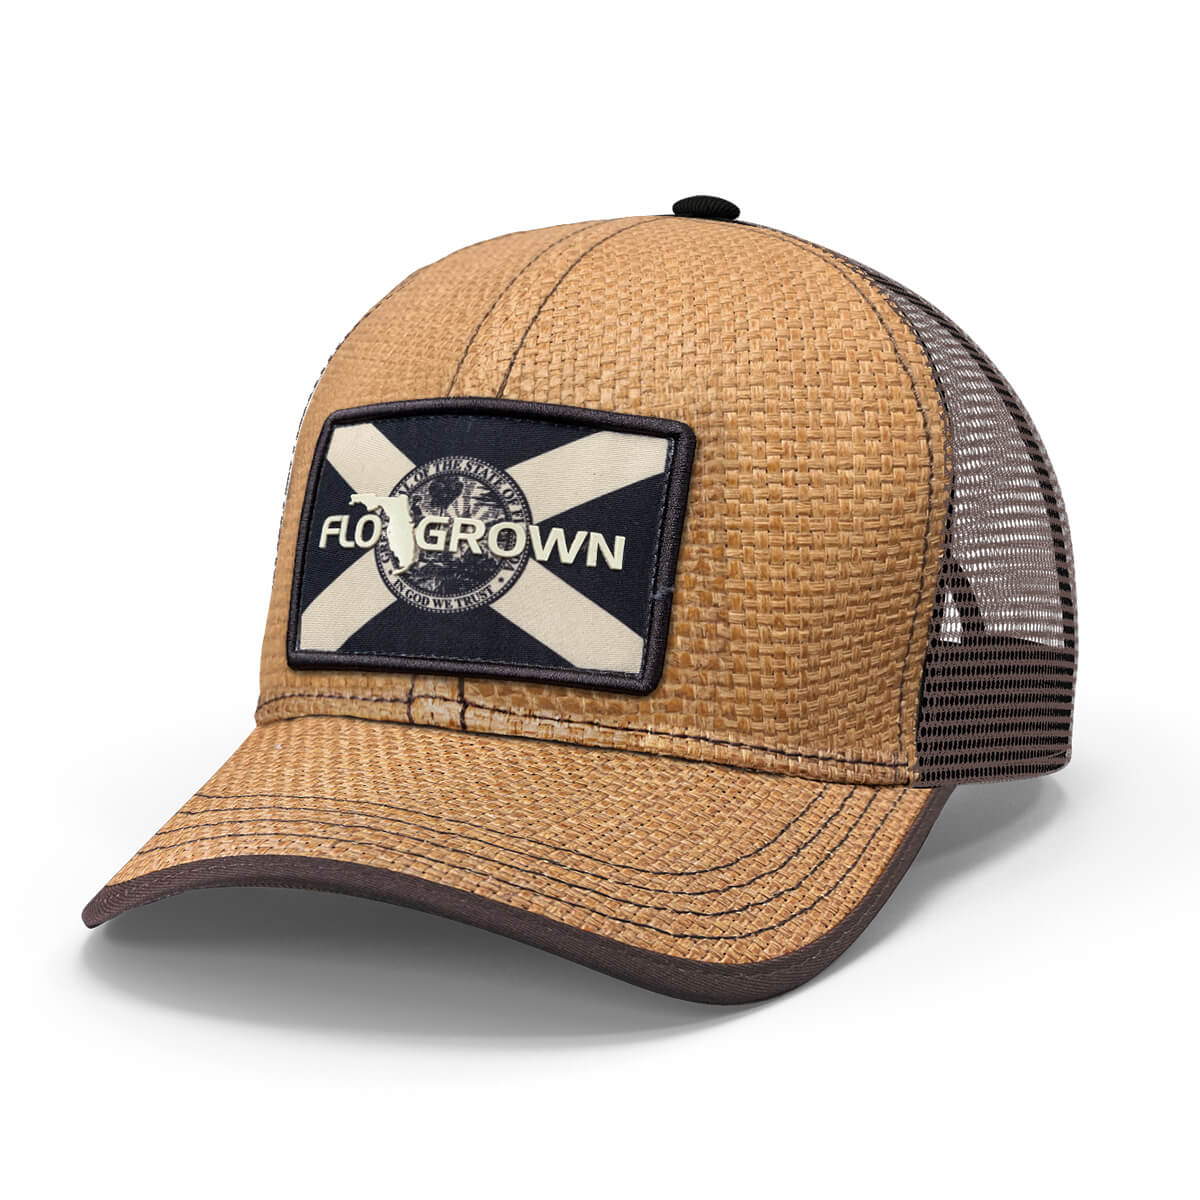 FloGrown Mens Florida Logo Seal Map Print Straw Hat